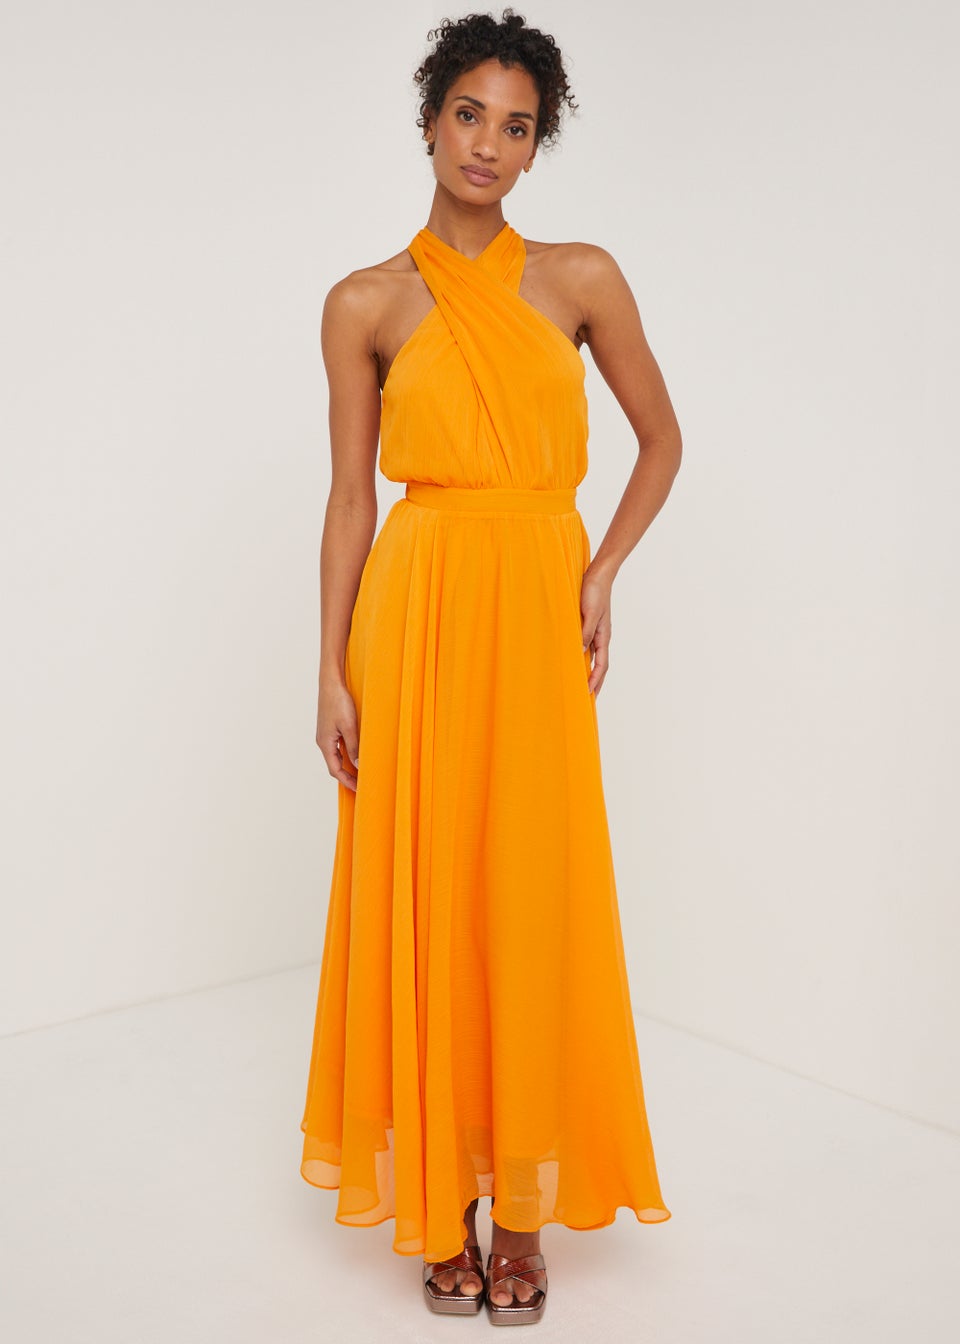 Et Vous Orange Cross Front Maxi Dress - Matalan